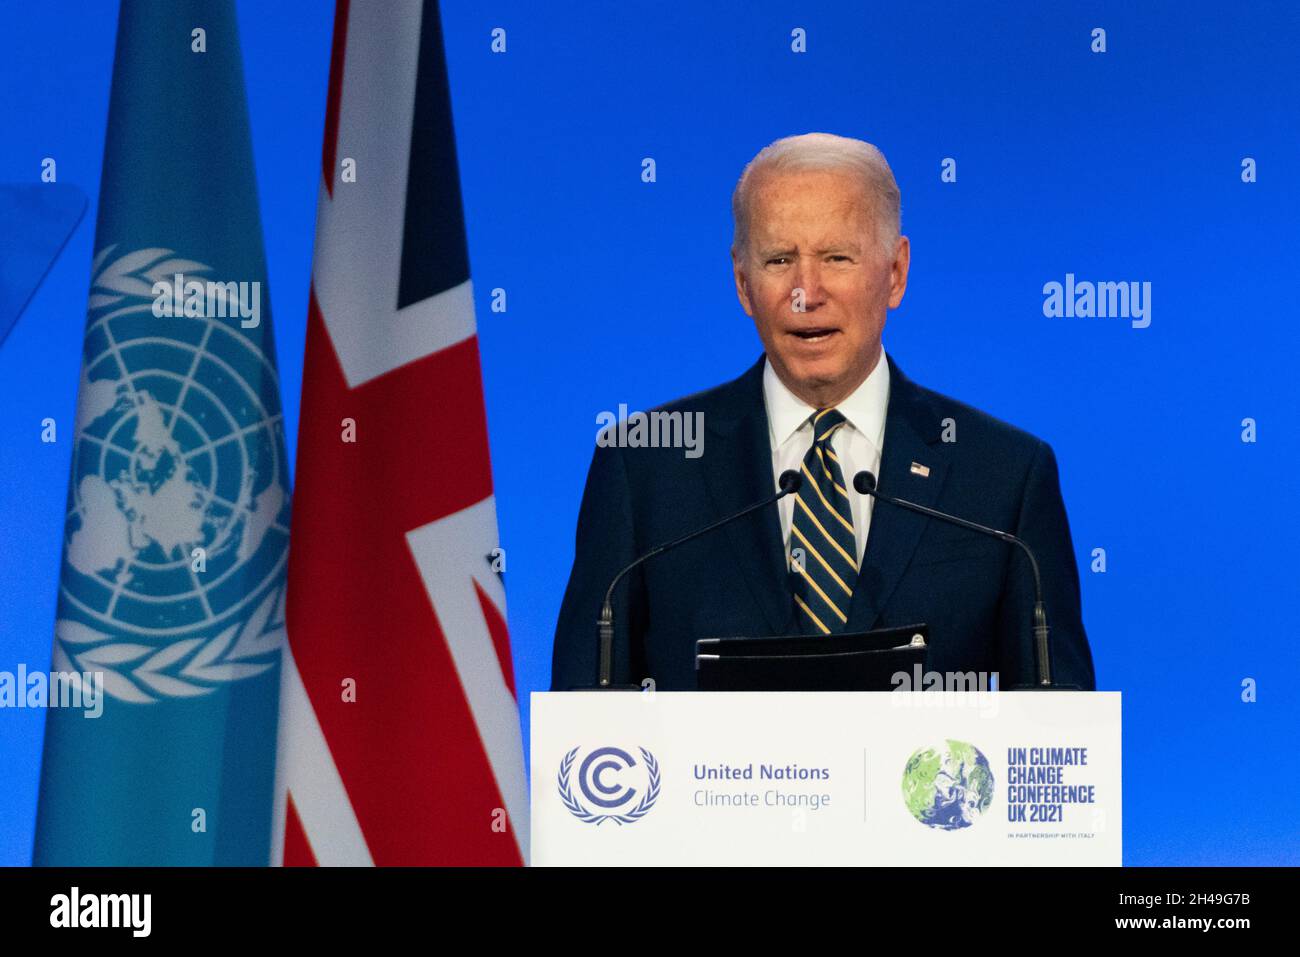 Glasgow, Scozia, Regno Unito. 1 novembre 2021. Il Presidente DEGLI STATI UNITI Joe Biden parla alla conferenza COP26 delle Nazioni Unite sui cambiamenti climatici a Glasgow. Iain Masterton/Alamy Live News. Foto Stock